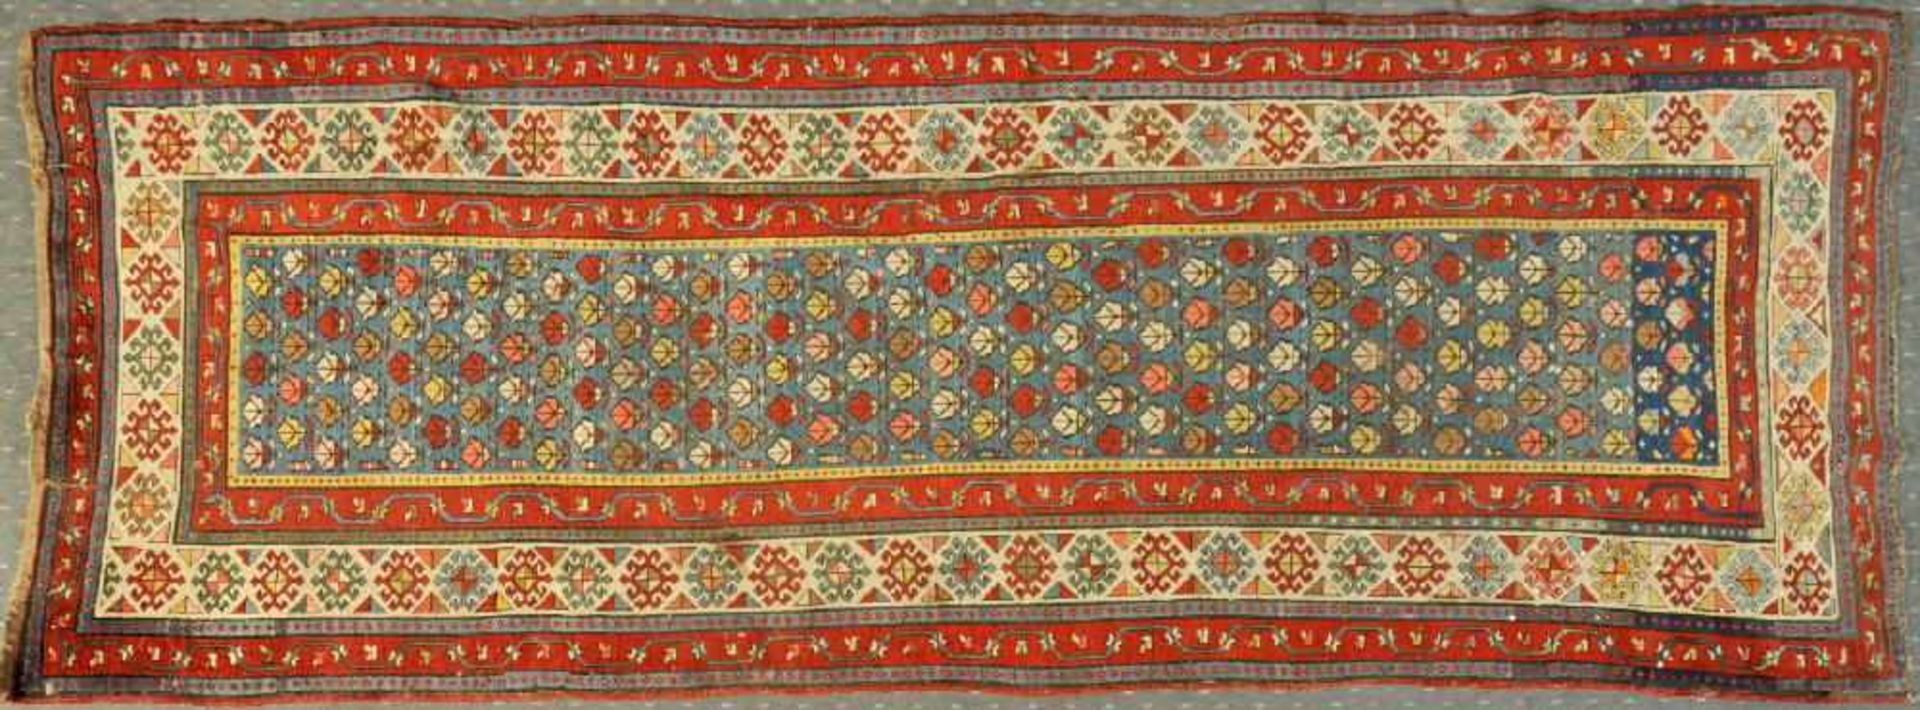 Kasak-Galerie, Kaukasus, 97 x 274 cmantik, Wolle, Pflanzenfarben, blaugrundig, durchgemustert mit